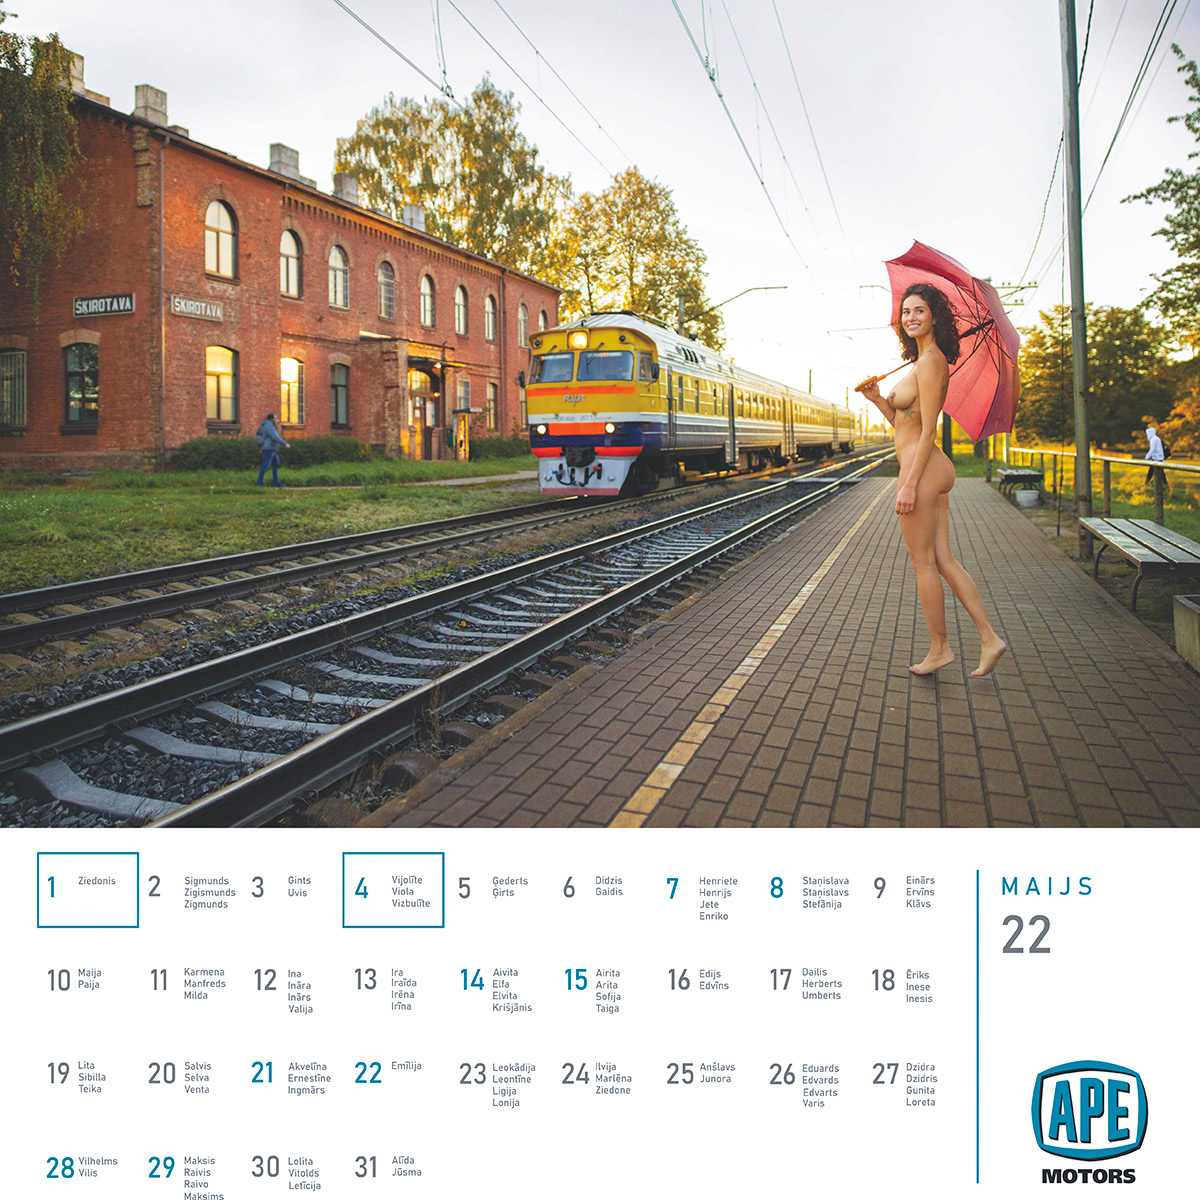 Mārtiņš Plūme | Erotisks kalendārs 2022 gadam (lielais kalendārs) APE Motors | Foto Martins Plume kailfoto kalendars nude calendar 6